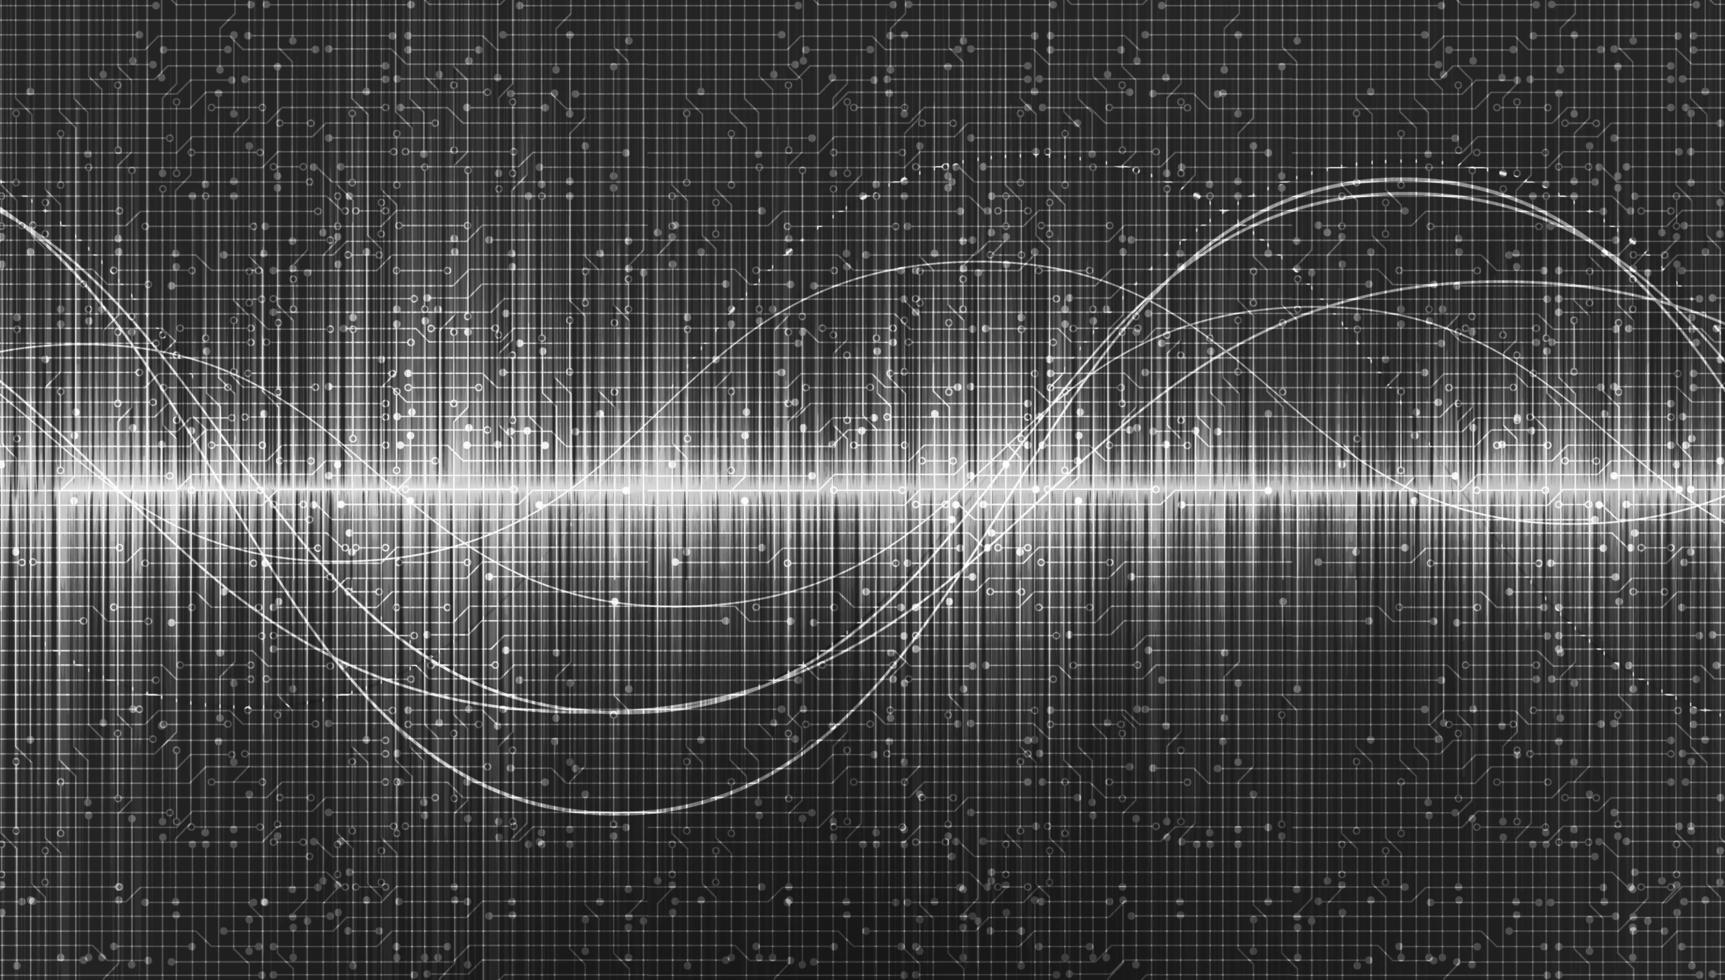 ondes sonores numériques sur fond gris, technologie et concept d'onde de tremblement de terre, conception pour l'industrie de la musique, vecteur, illustration. vecteur